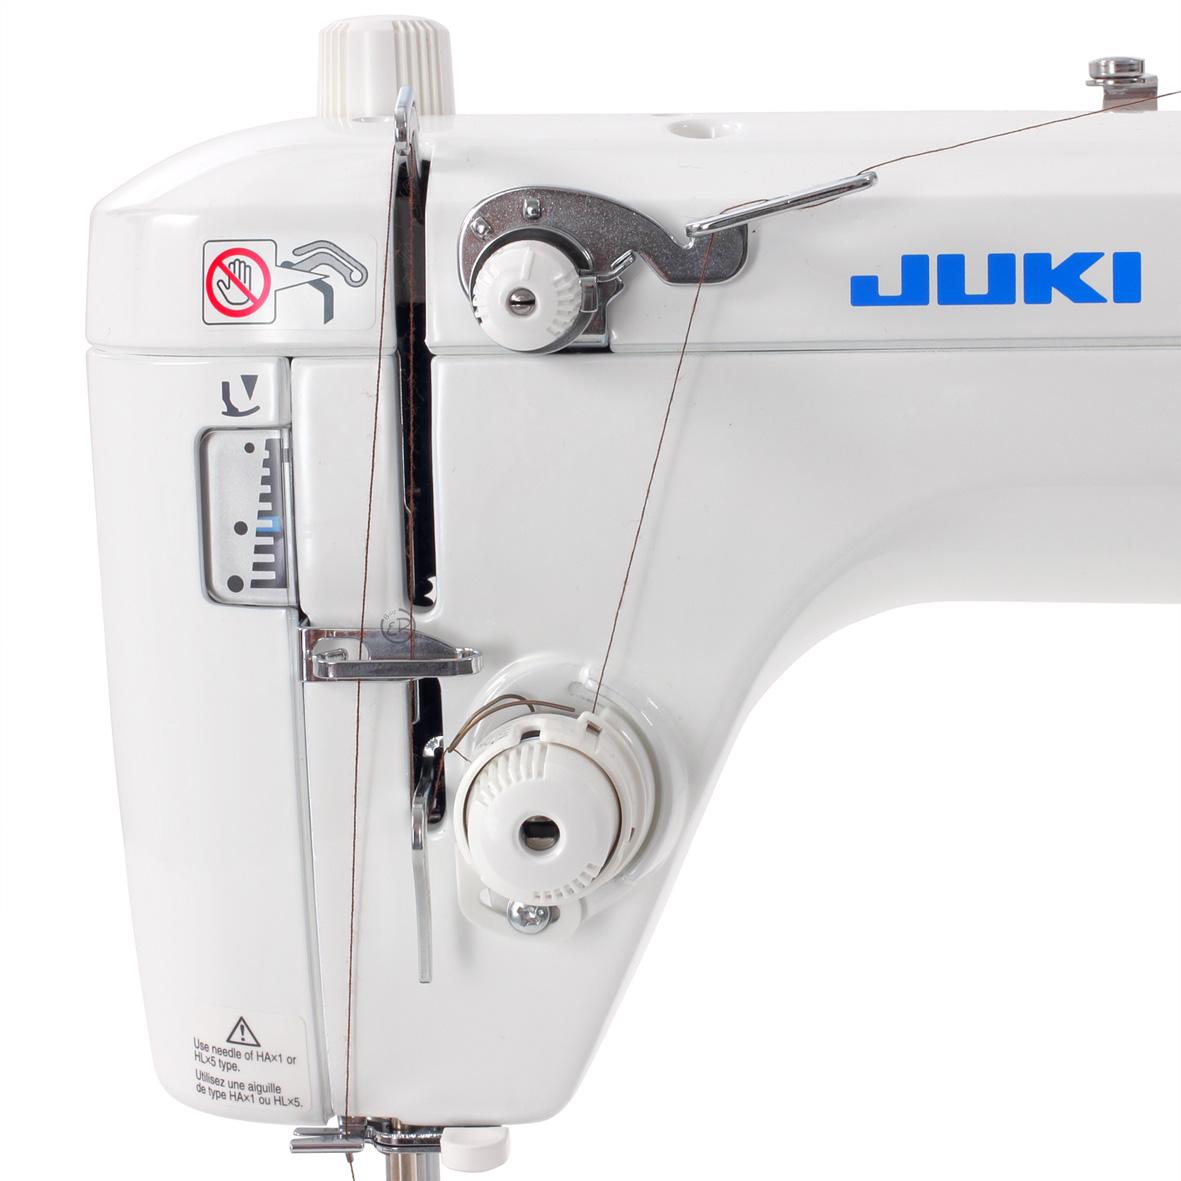 Купить швейную машинку juki. Швейная машина Juki TL 2010q. Juki TL-2200 QVP Mini швейная машина. Швейная машина Juki TL-2010q, белый. Juki tl2010 швейной машине.